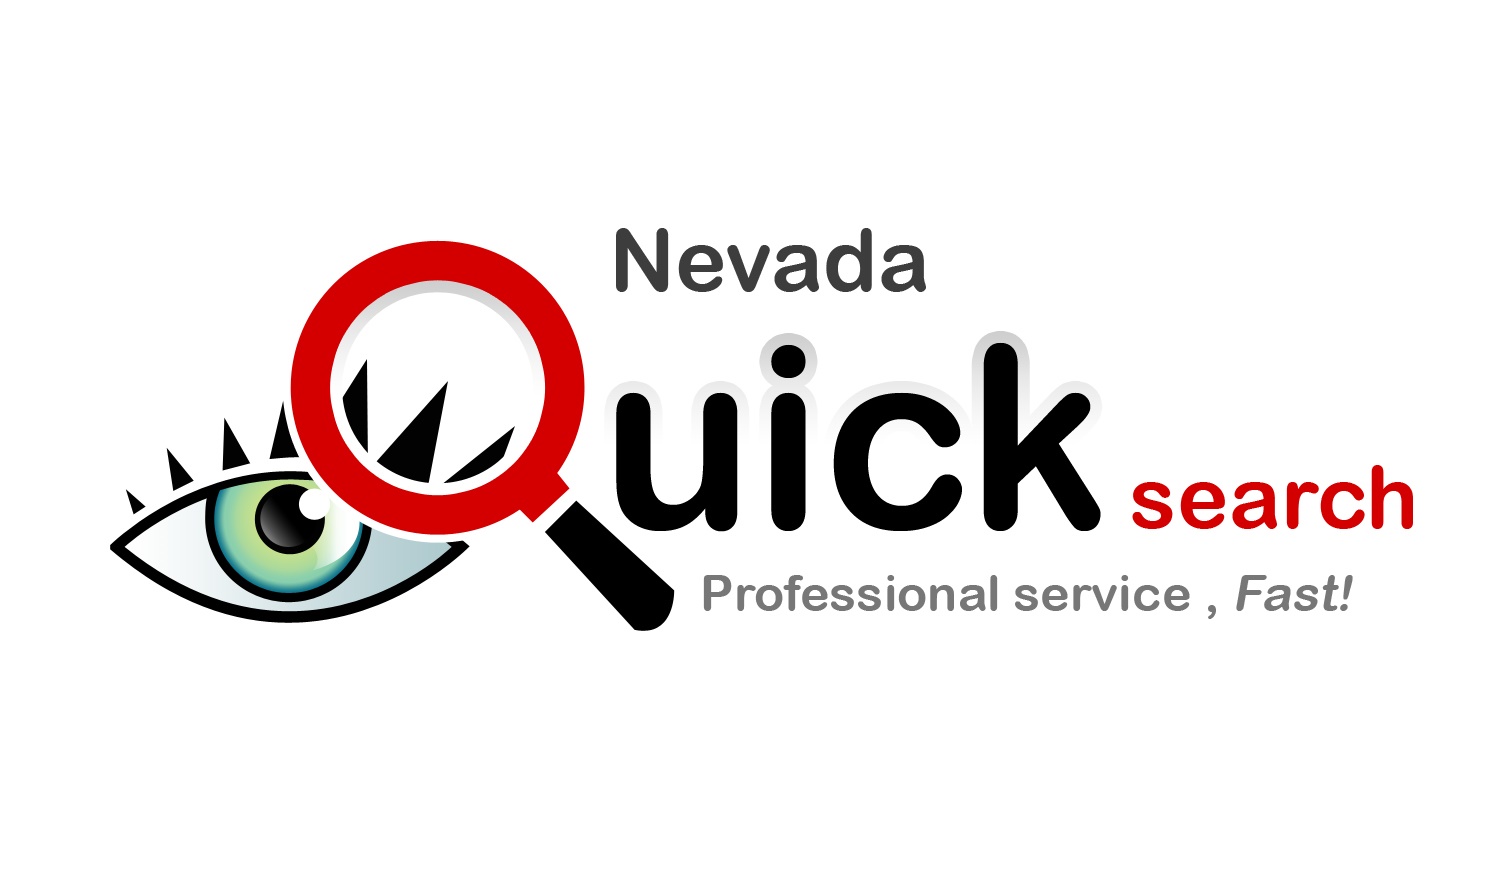 Nevada Quick Search, Inc